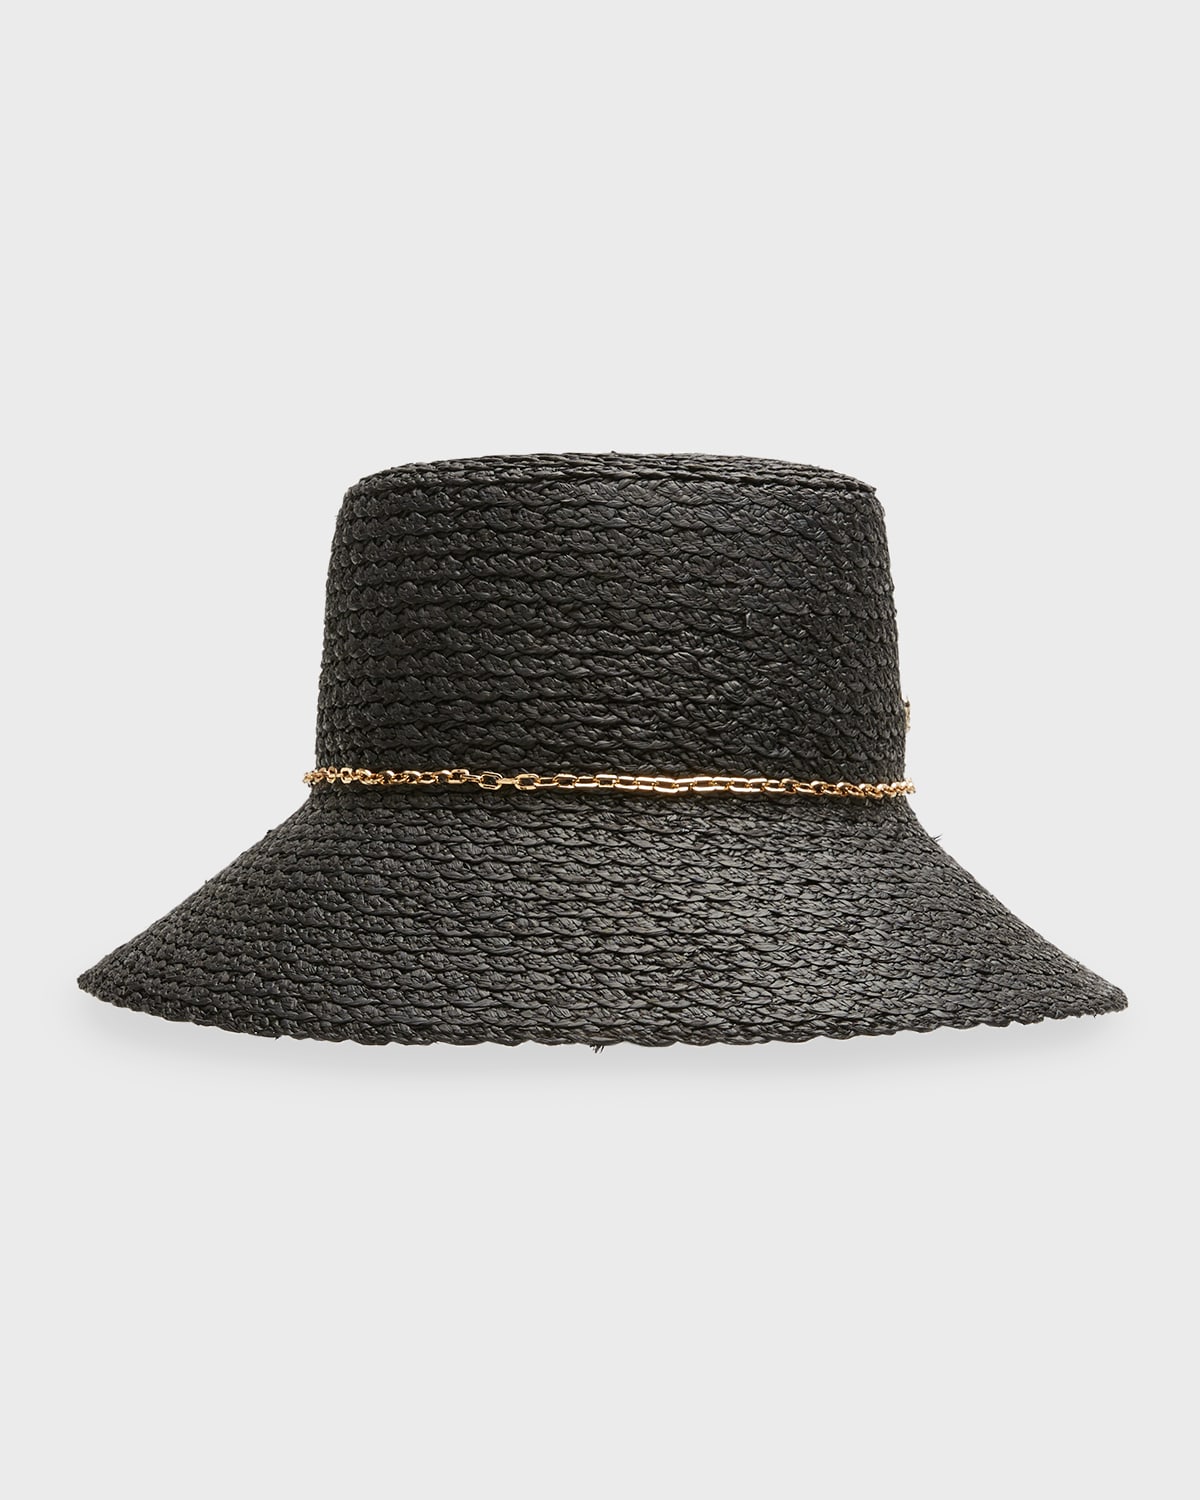 Jetta Raffia Bucket Hat With a Golden Chain